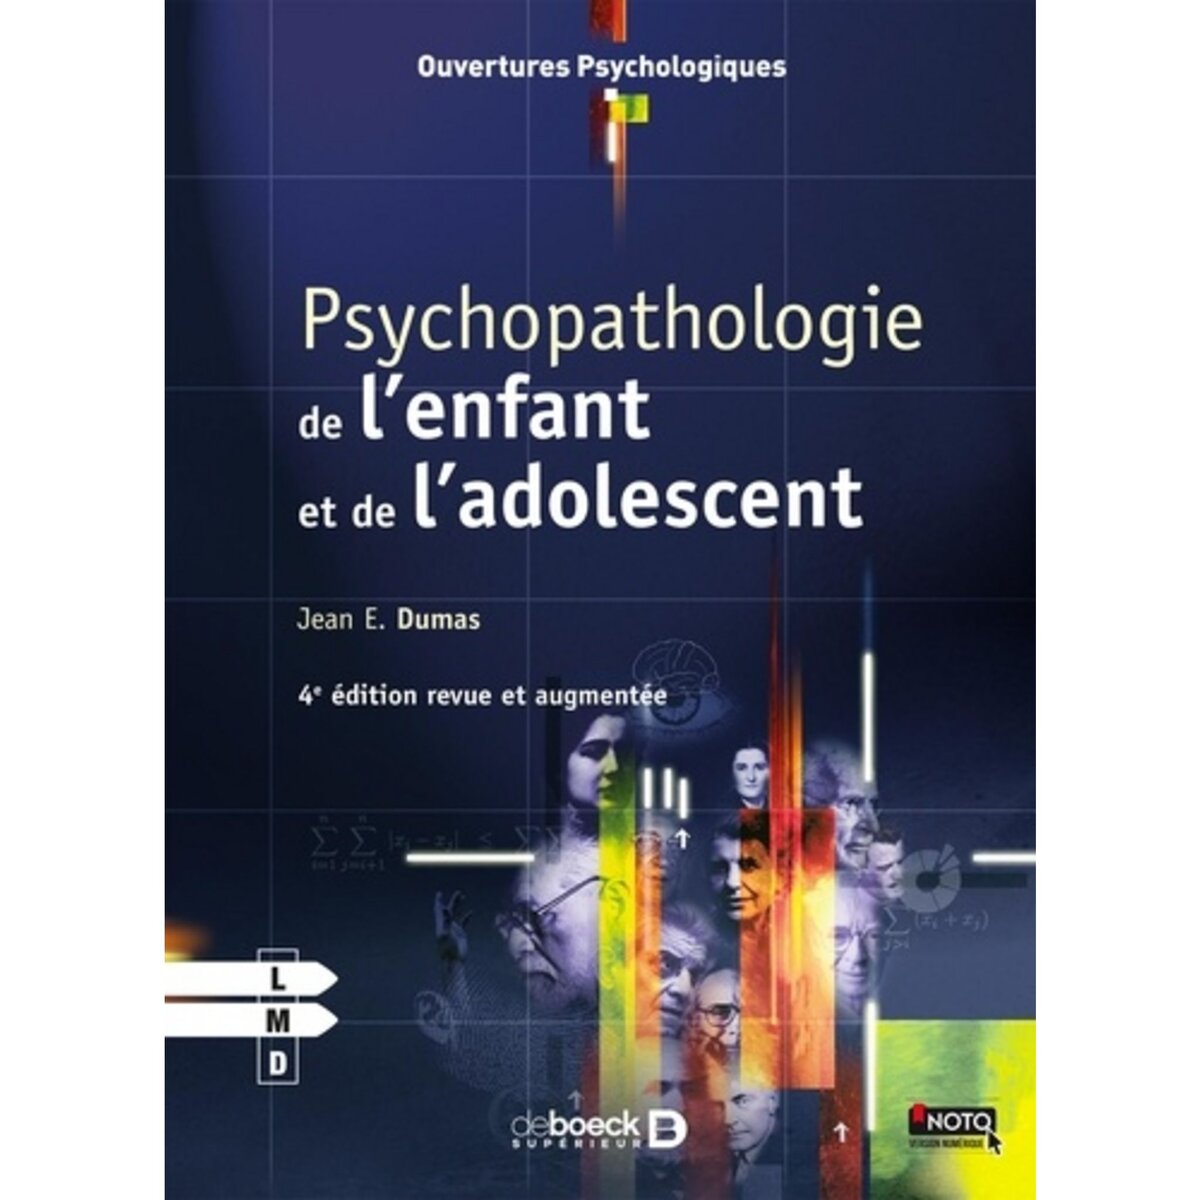  PSYCHOPATHOLOGIE DE L'ENFANT ET DE L'ADOLESCENT. 4E EDITION REVUE ET AUGMENTEE, Dumas Jean